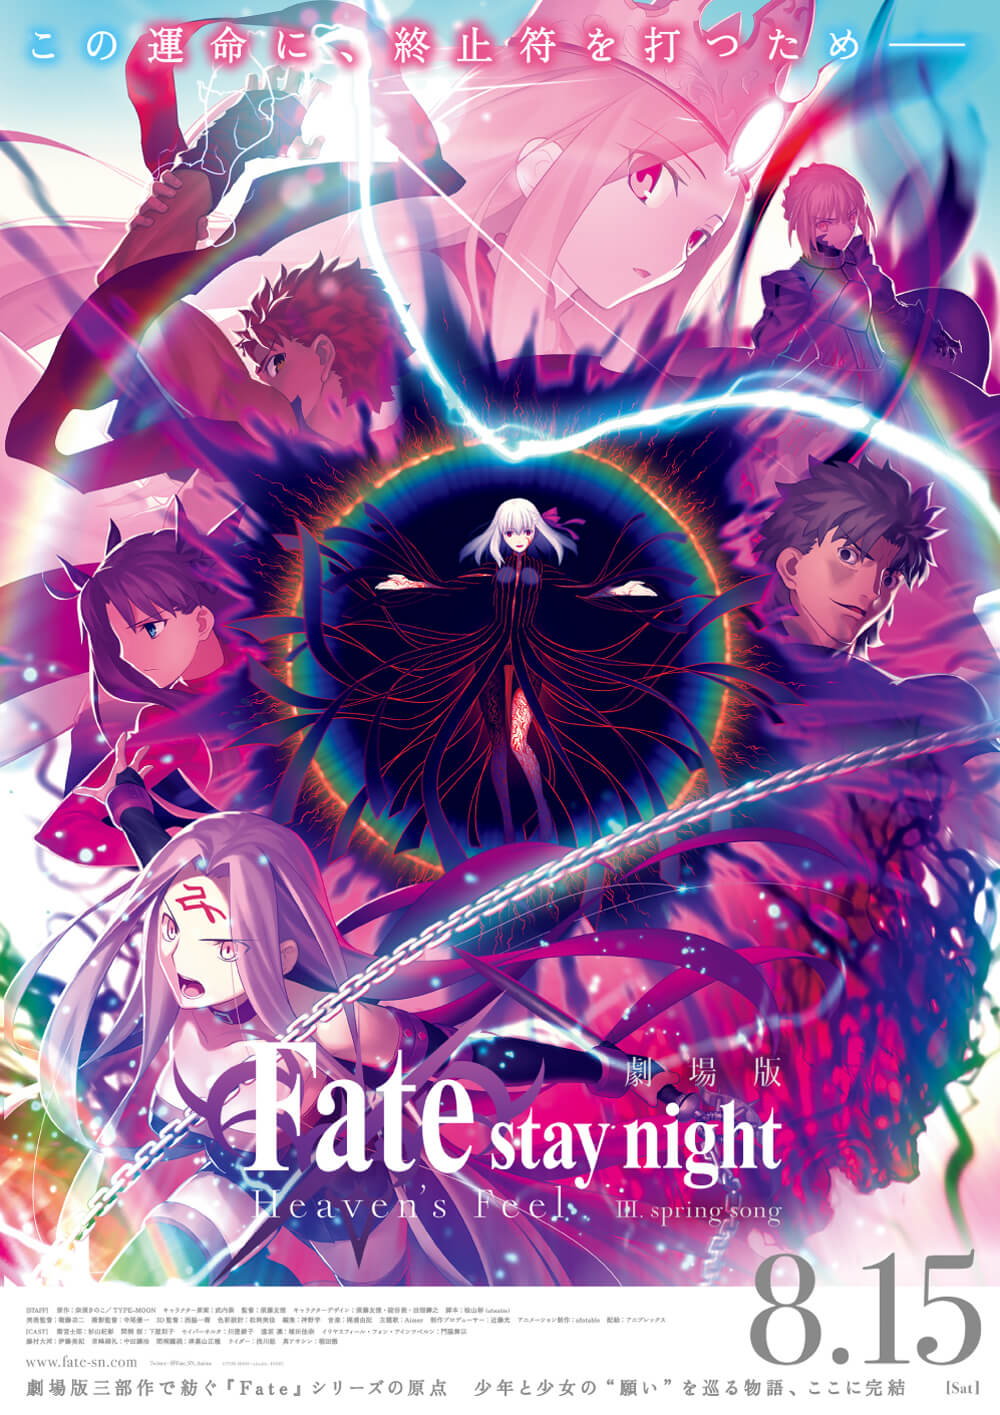 劇場版「Fate/stay night [Heaven's Feel]」Ⅲ.spring song